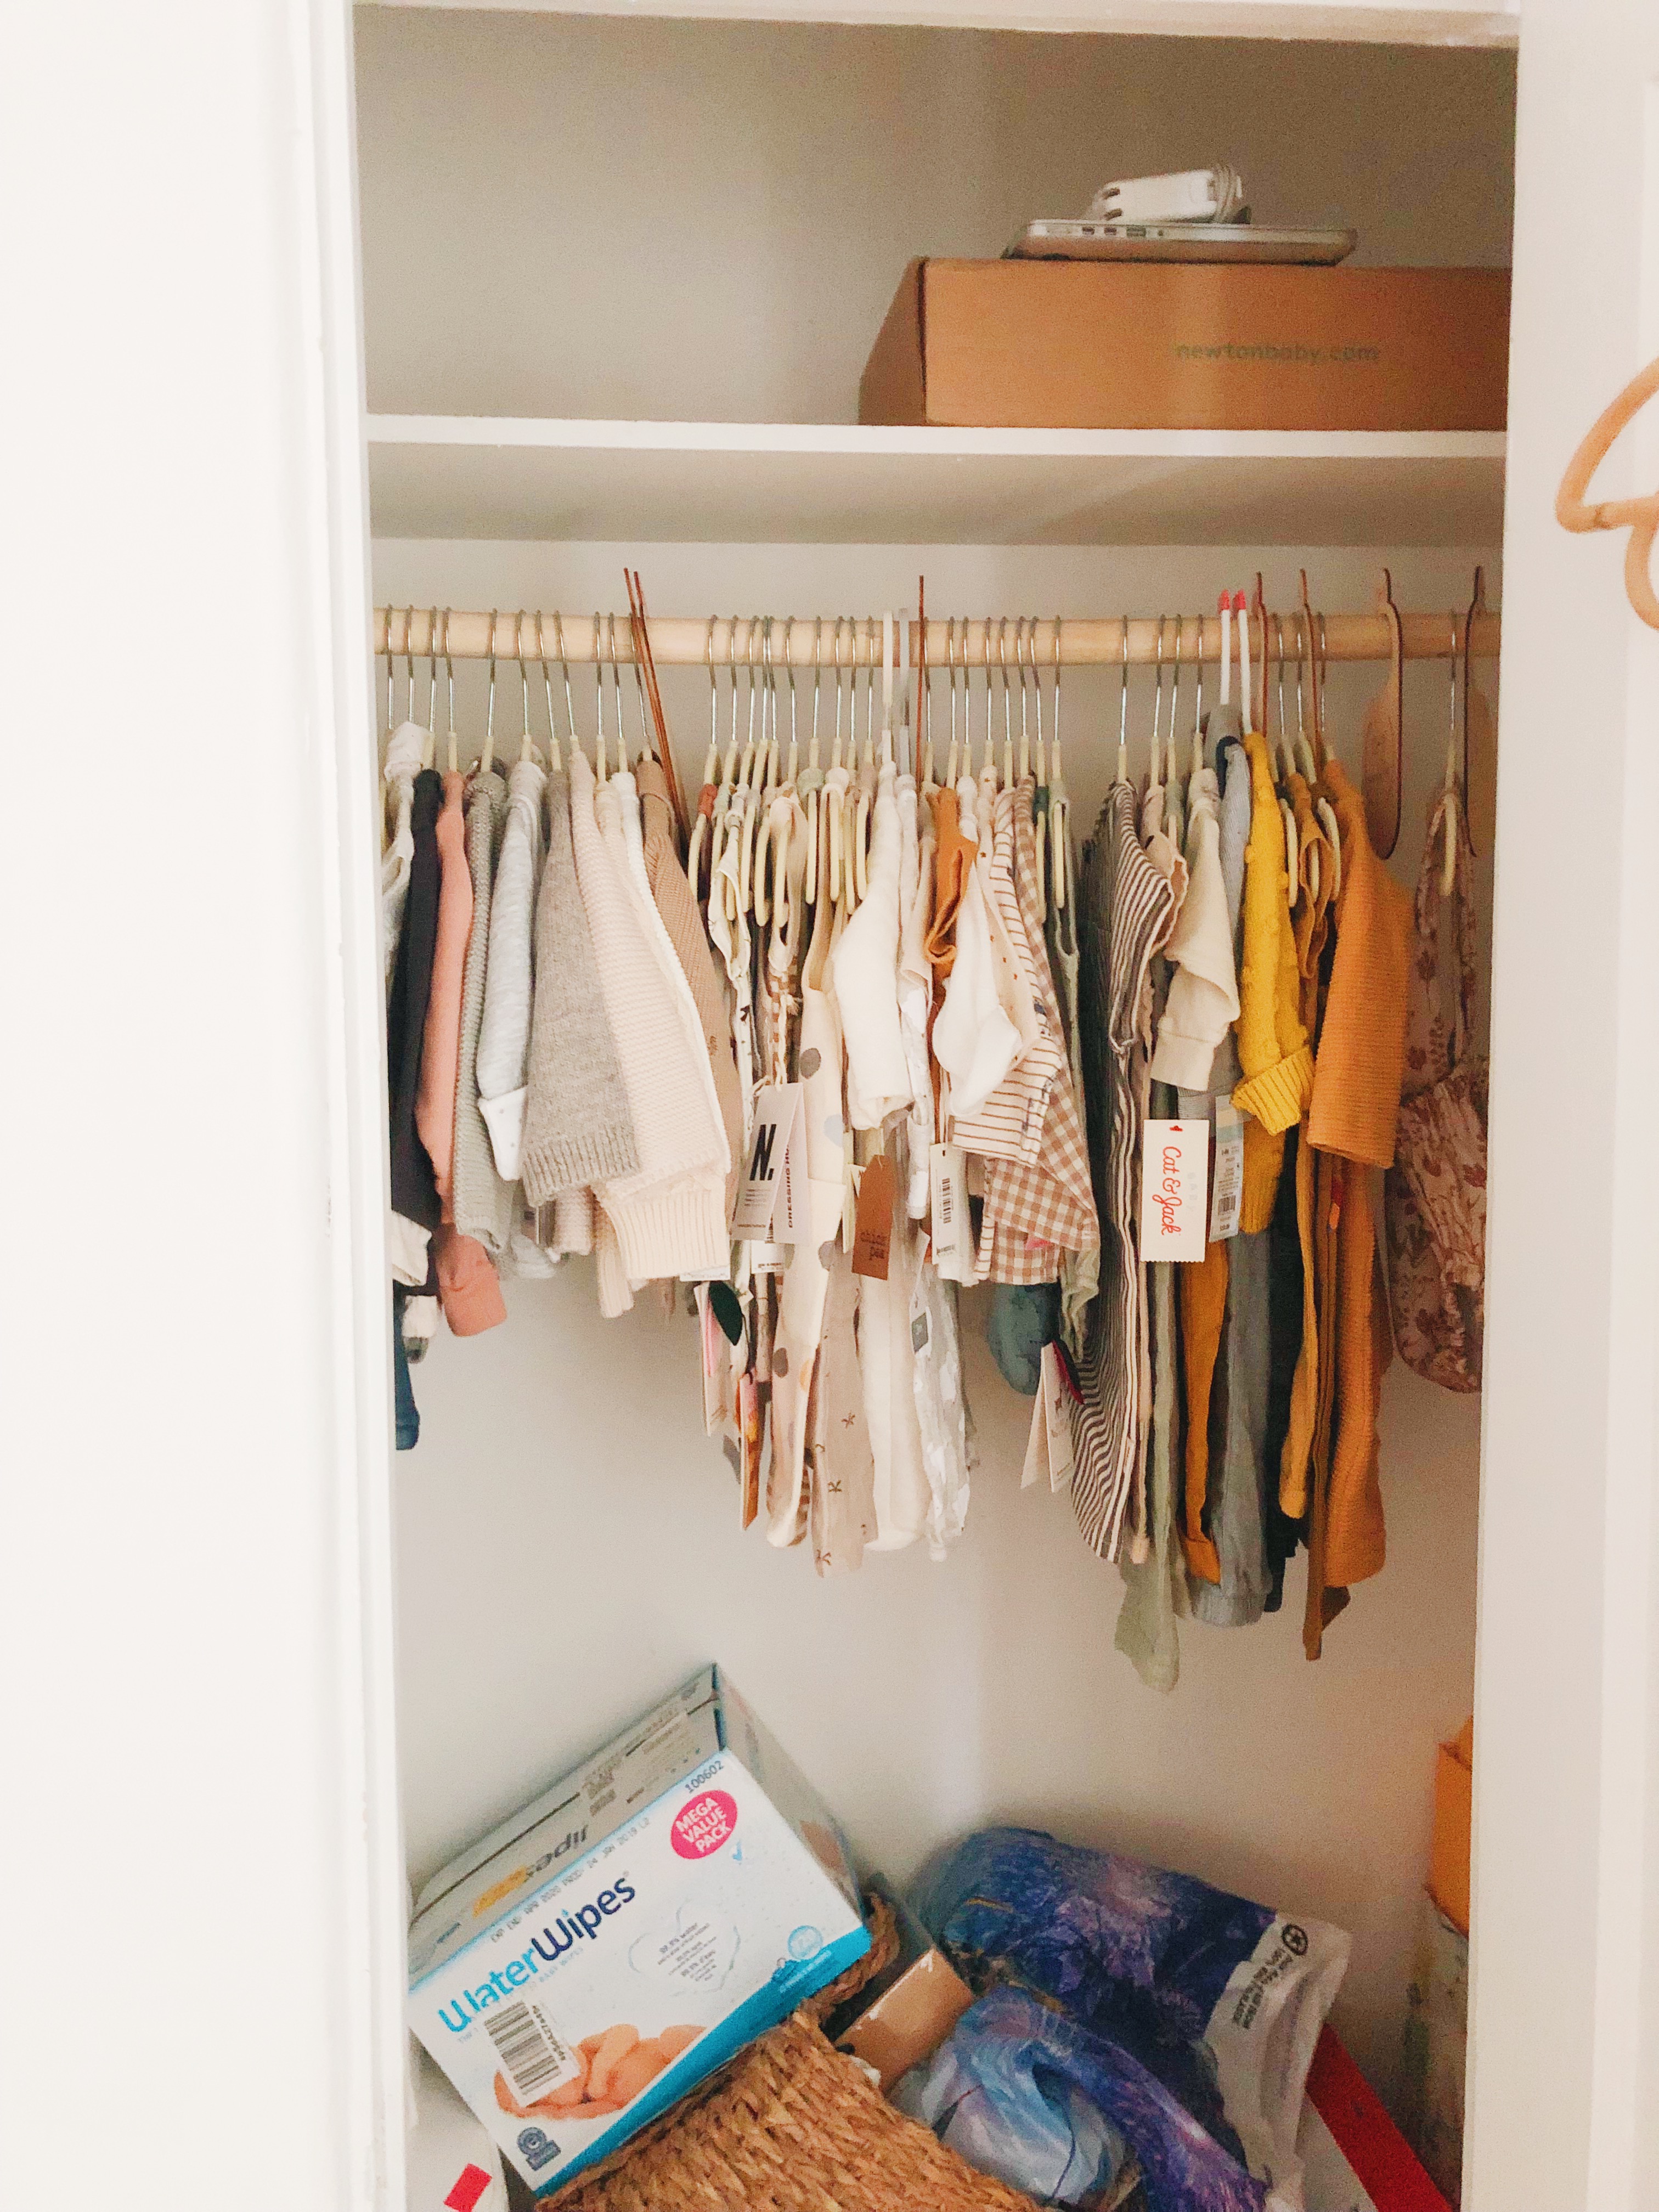 https://newdarlings.com/wp-content/uploads/2019/08/Baby-Nursery-Closet-Before.jpg